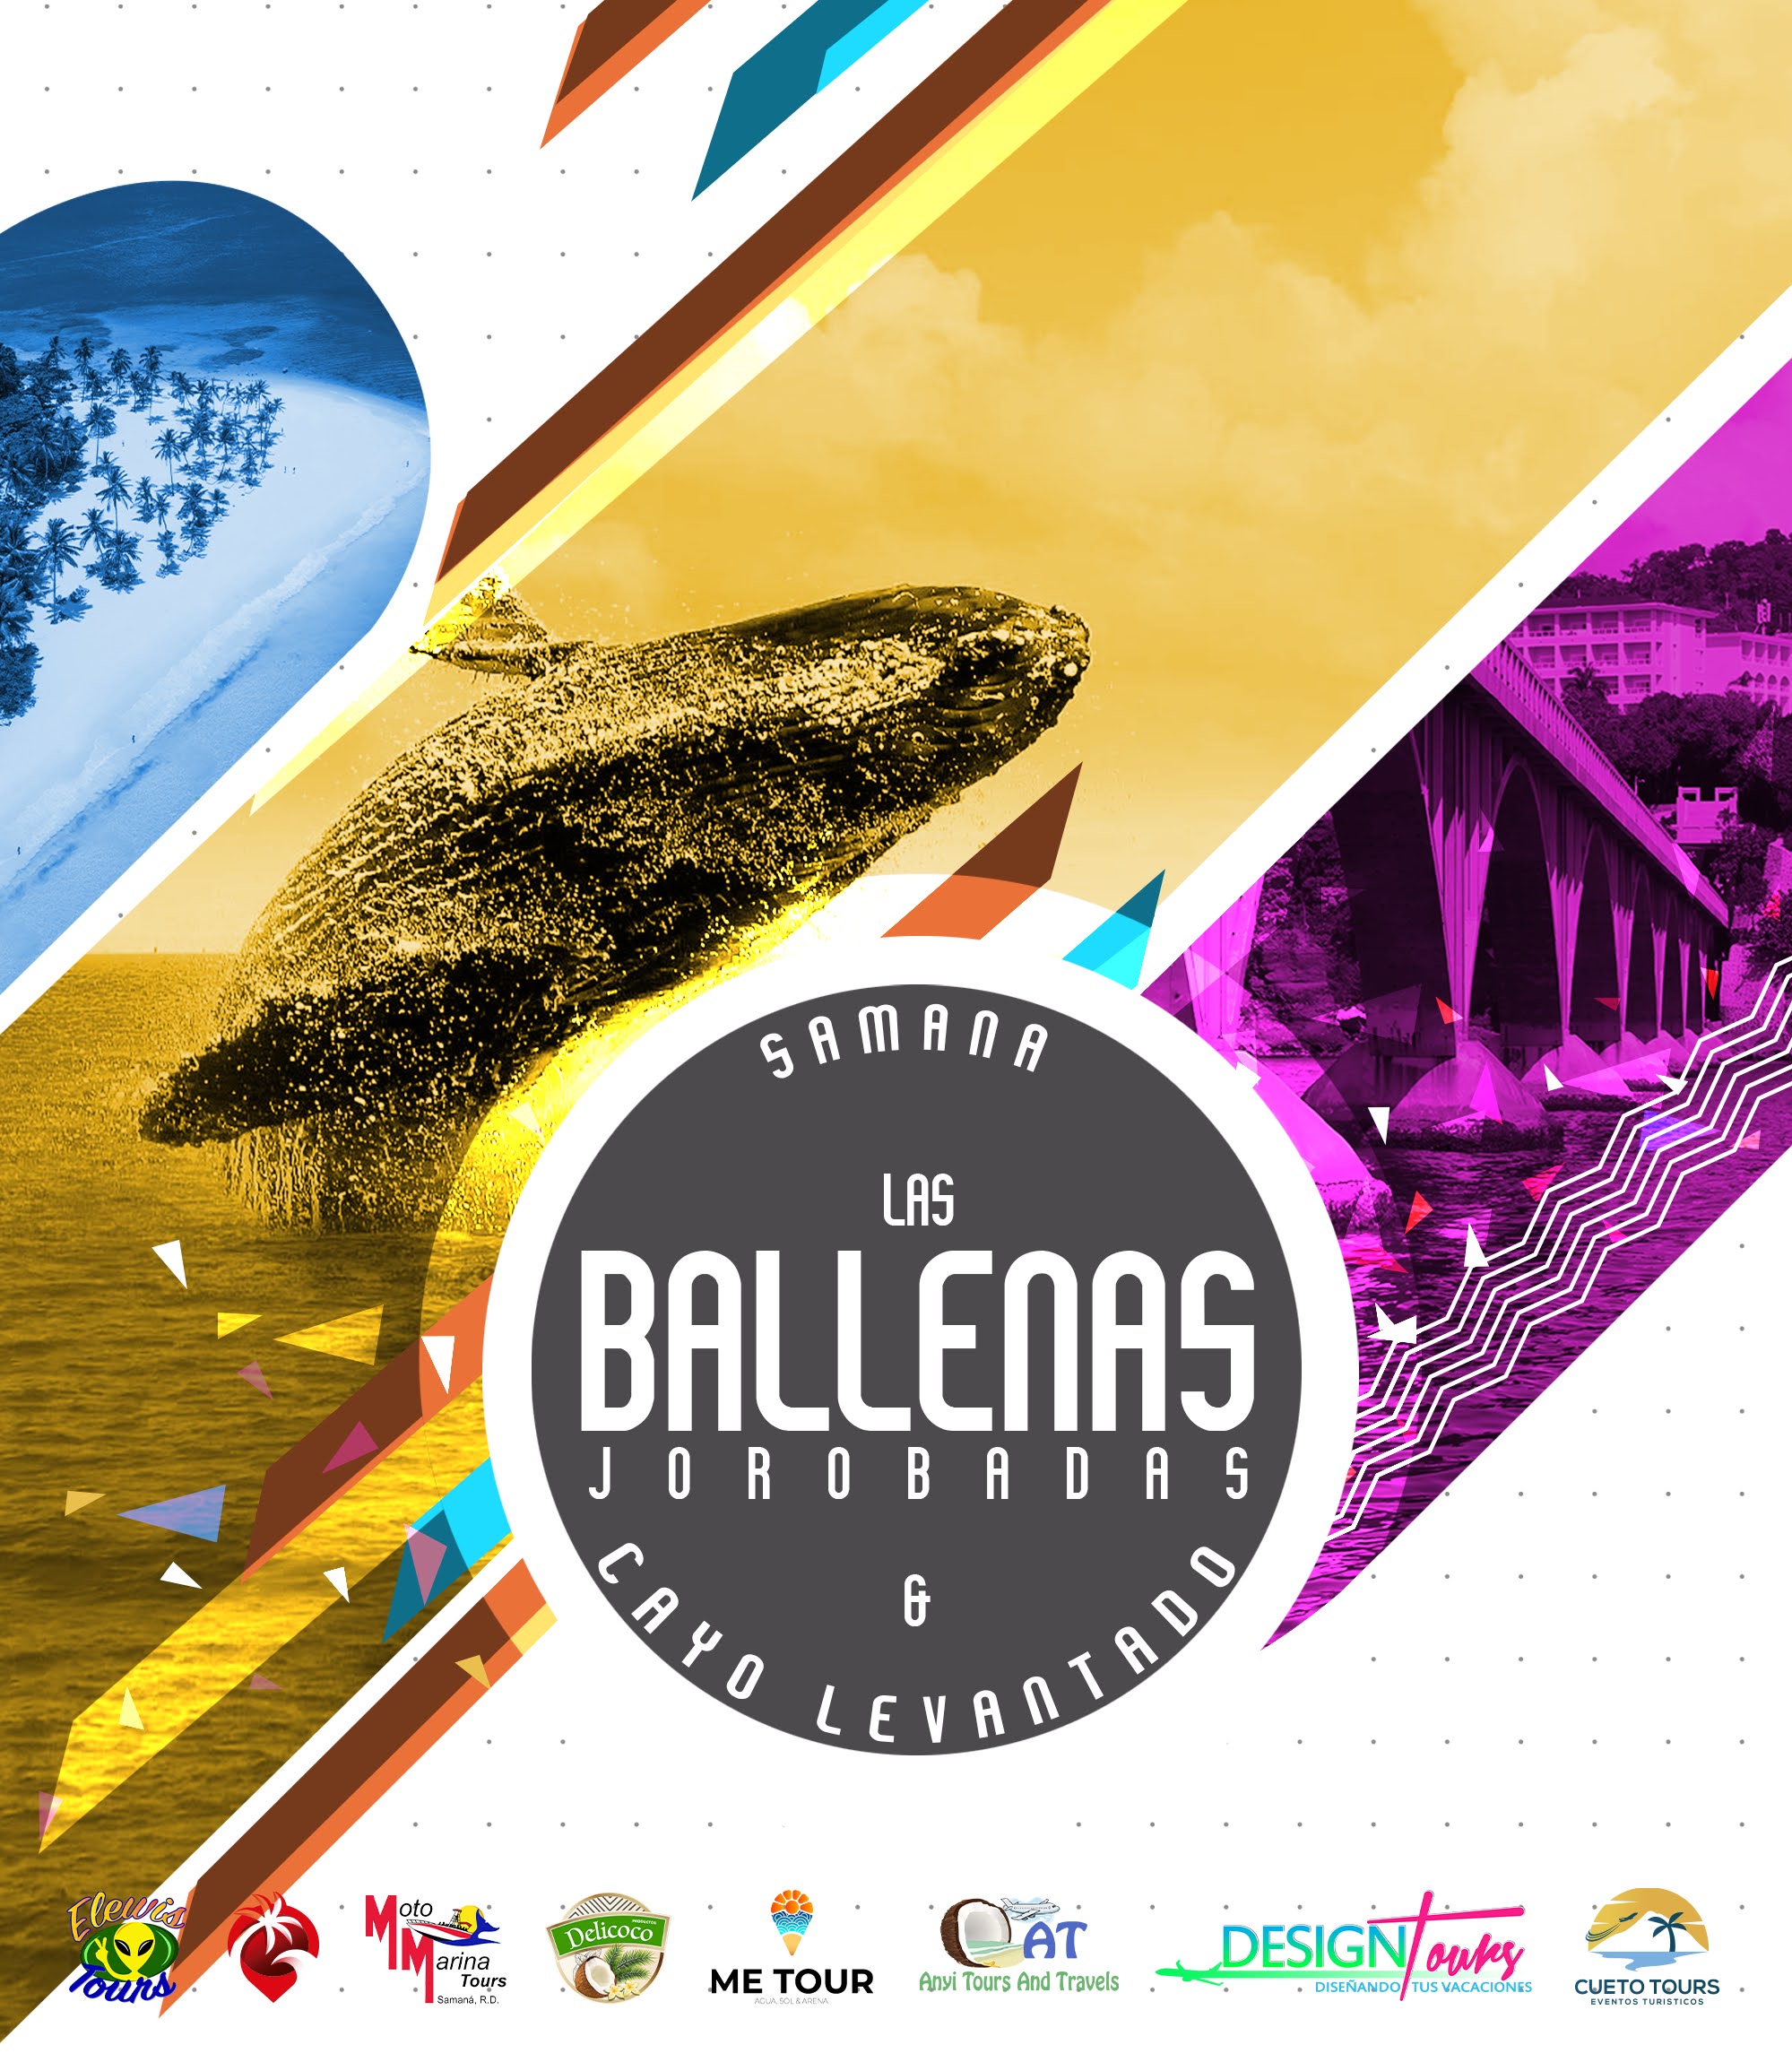 Tour Ballenas Jorobadas & Cayo Levantado en Samana